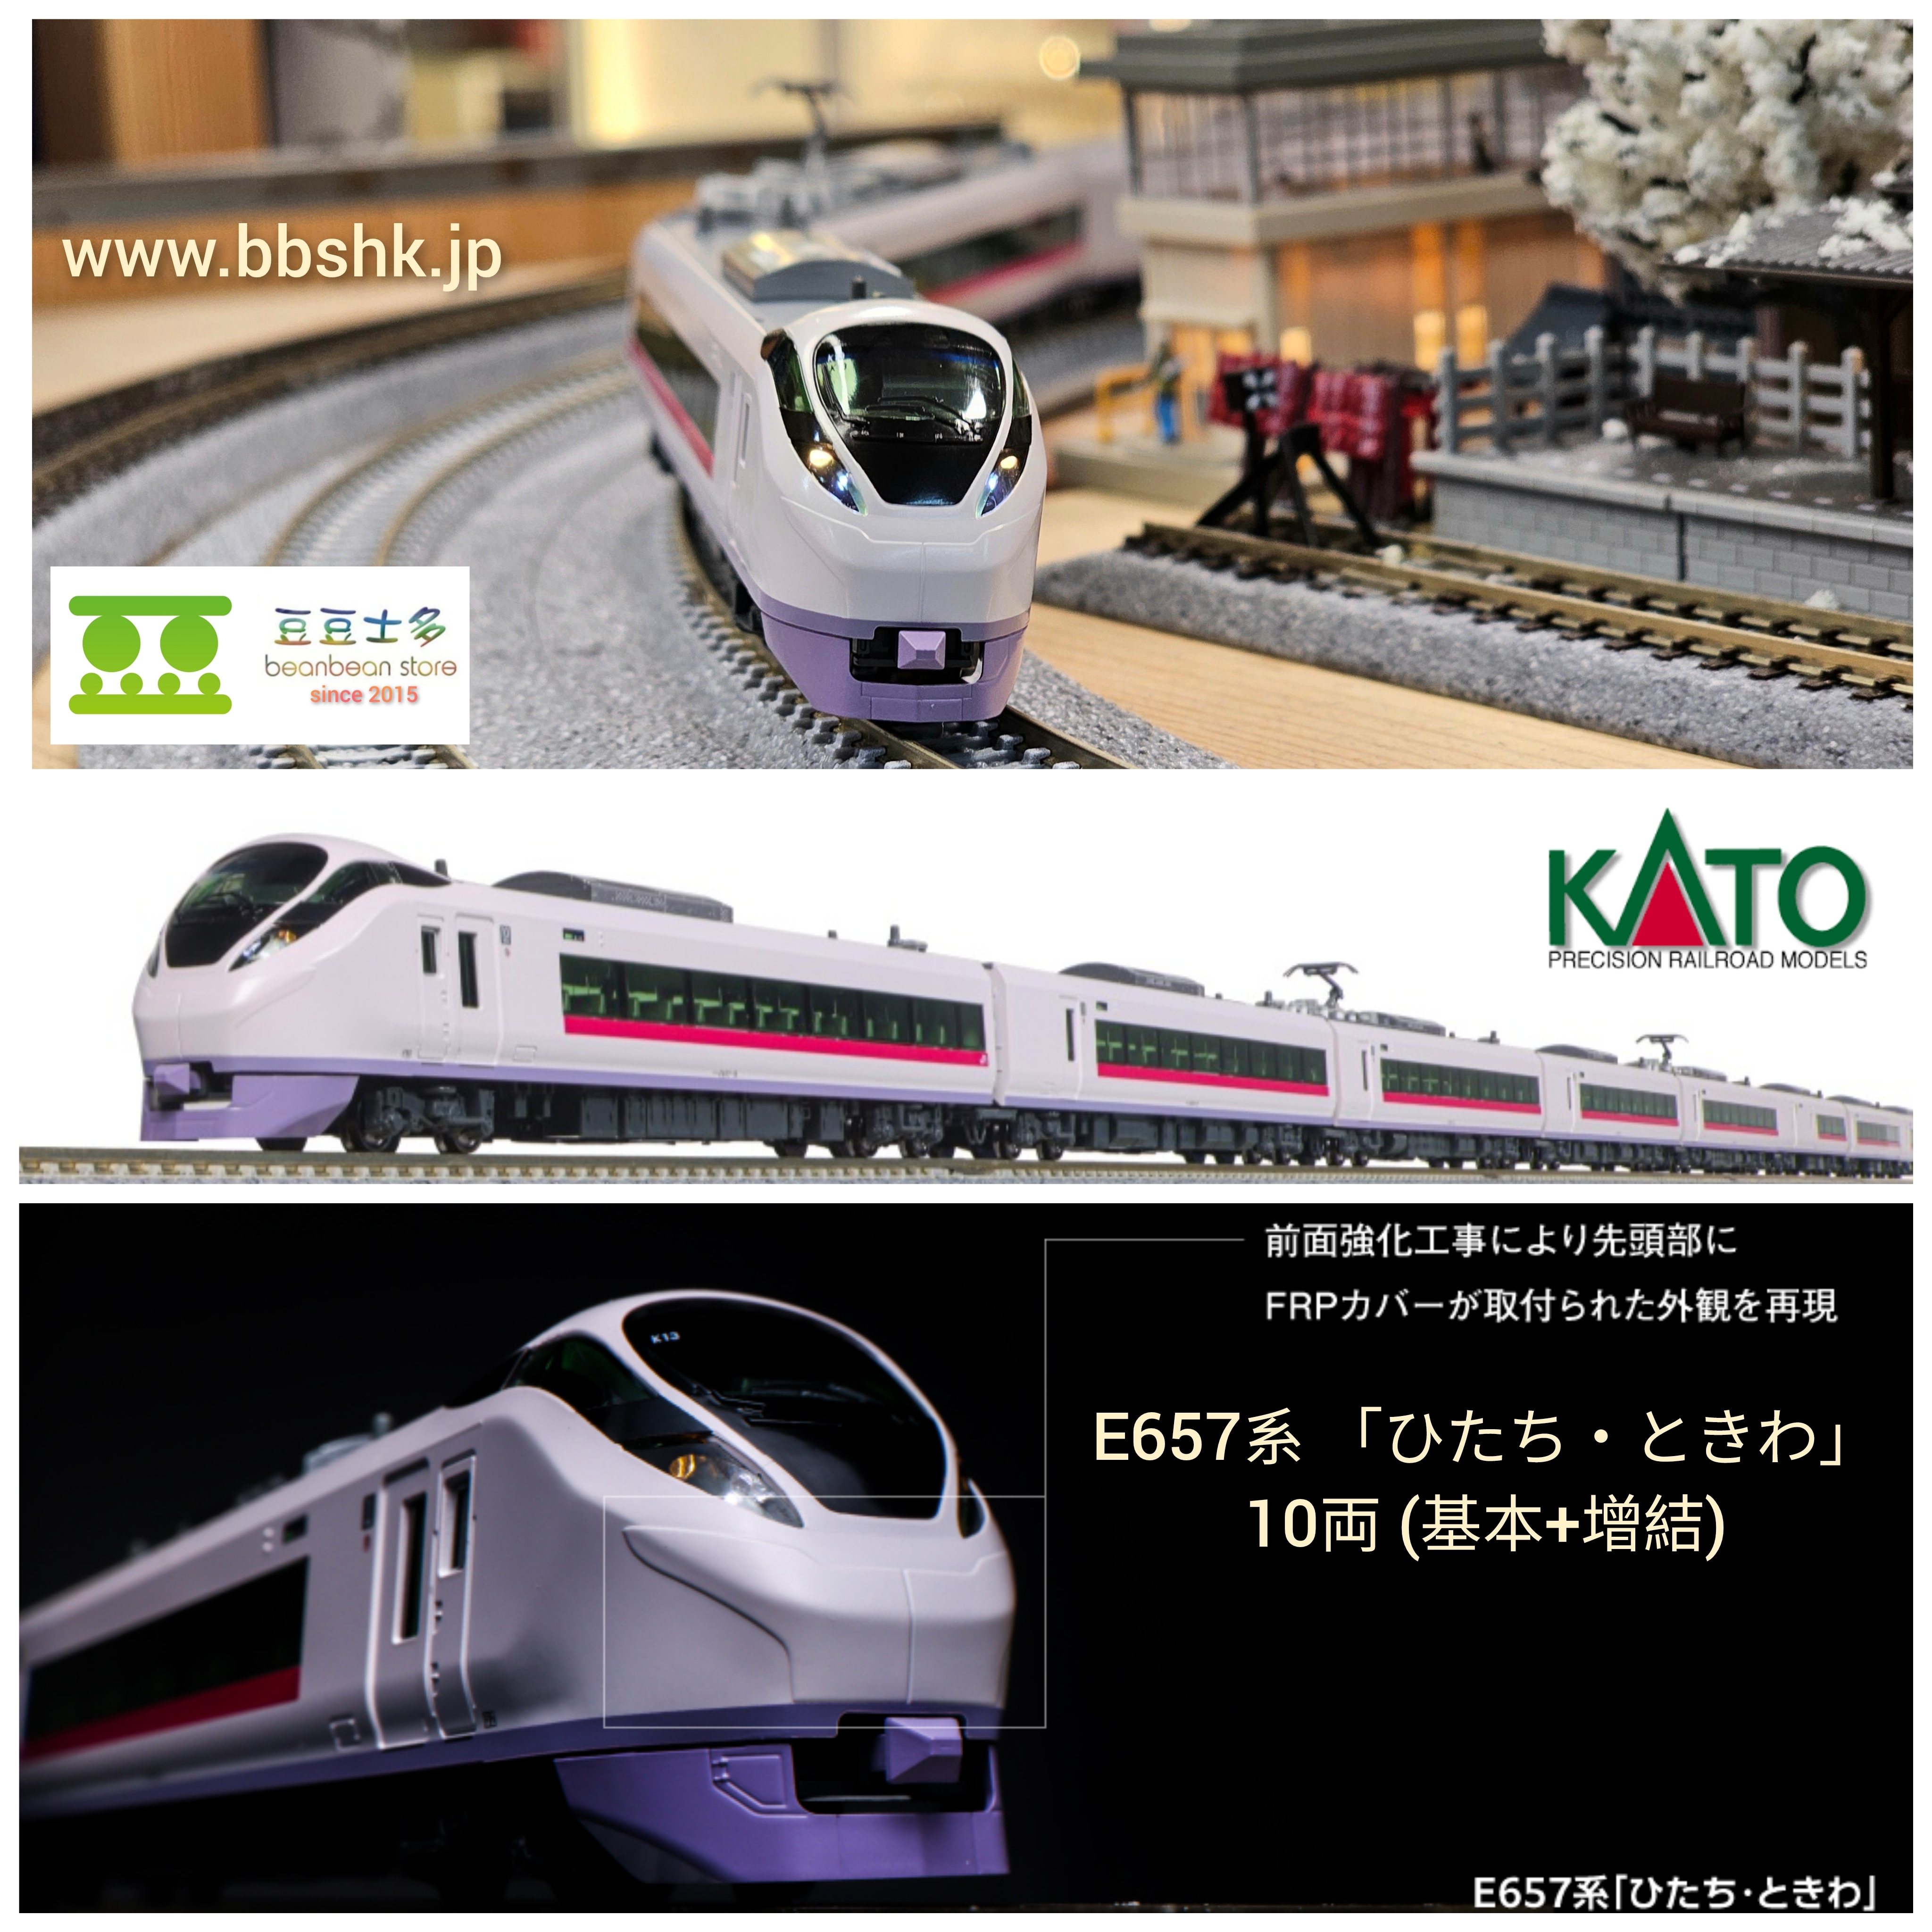 KATO 10-1639 + 1640 E657系 「ひたち・ときわ」10両 (基本 + 増結)